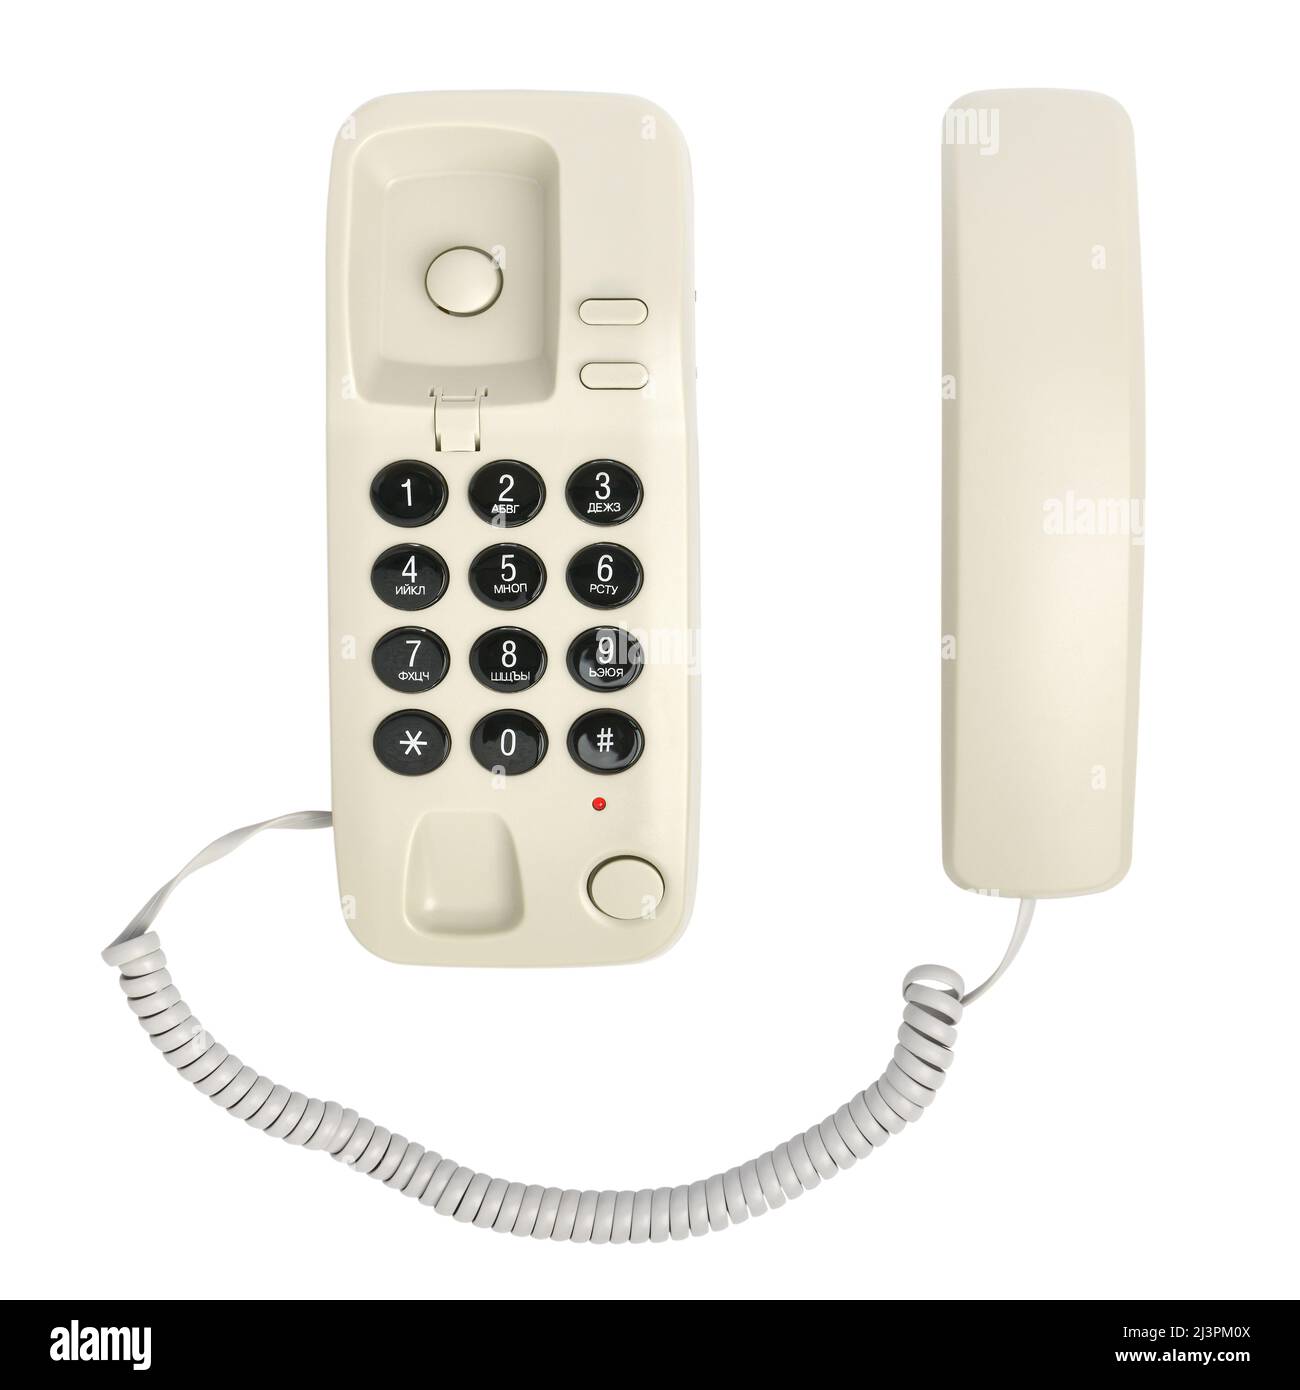 Kleines Festnetztelefon mit dem russischen Alphabet auf den Tasten, isoliert auf einem weißen Hintergrund Stockfoto